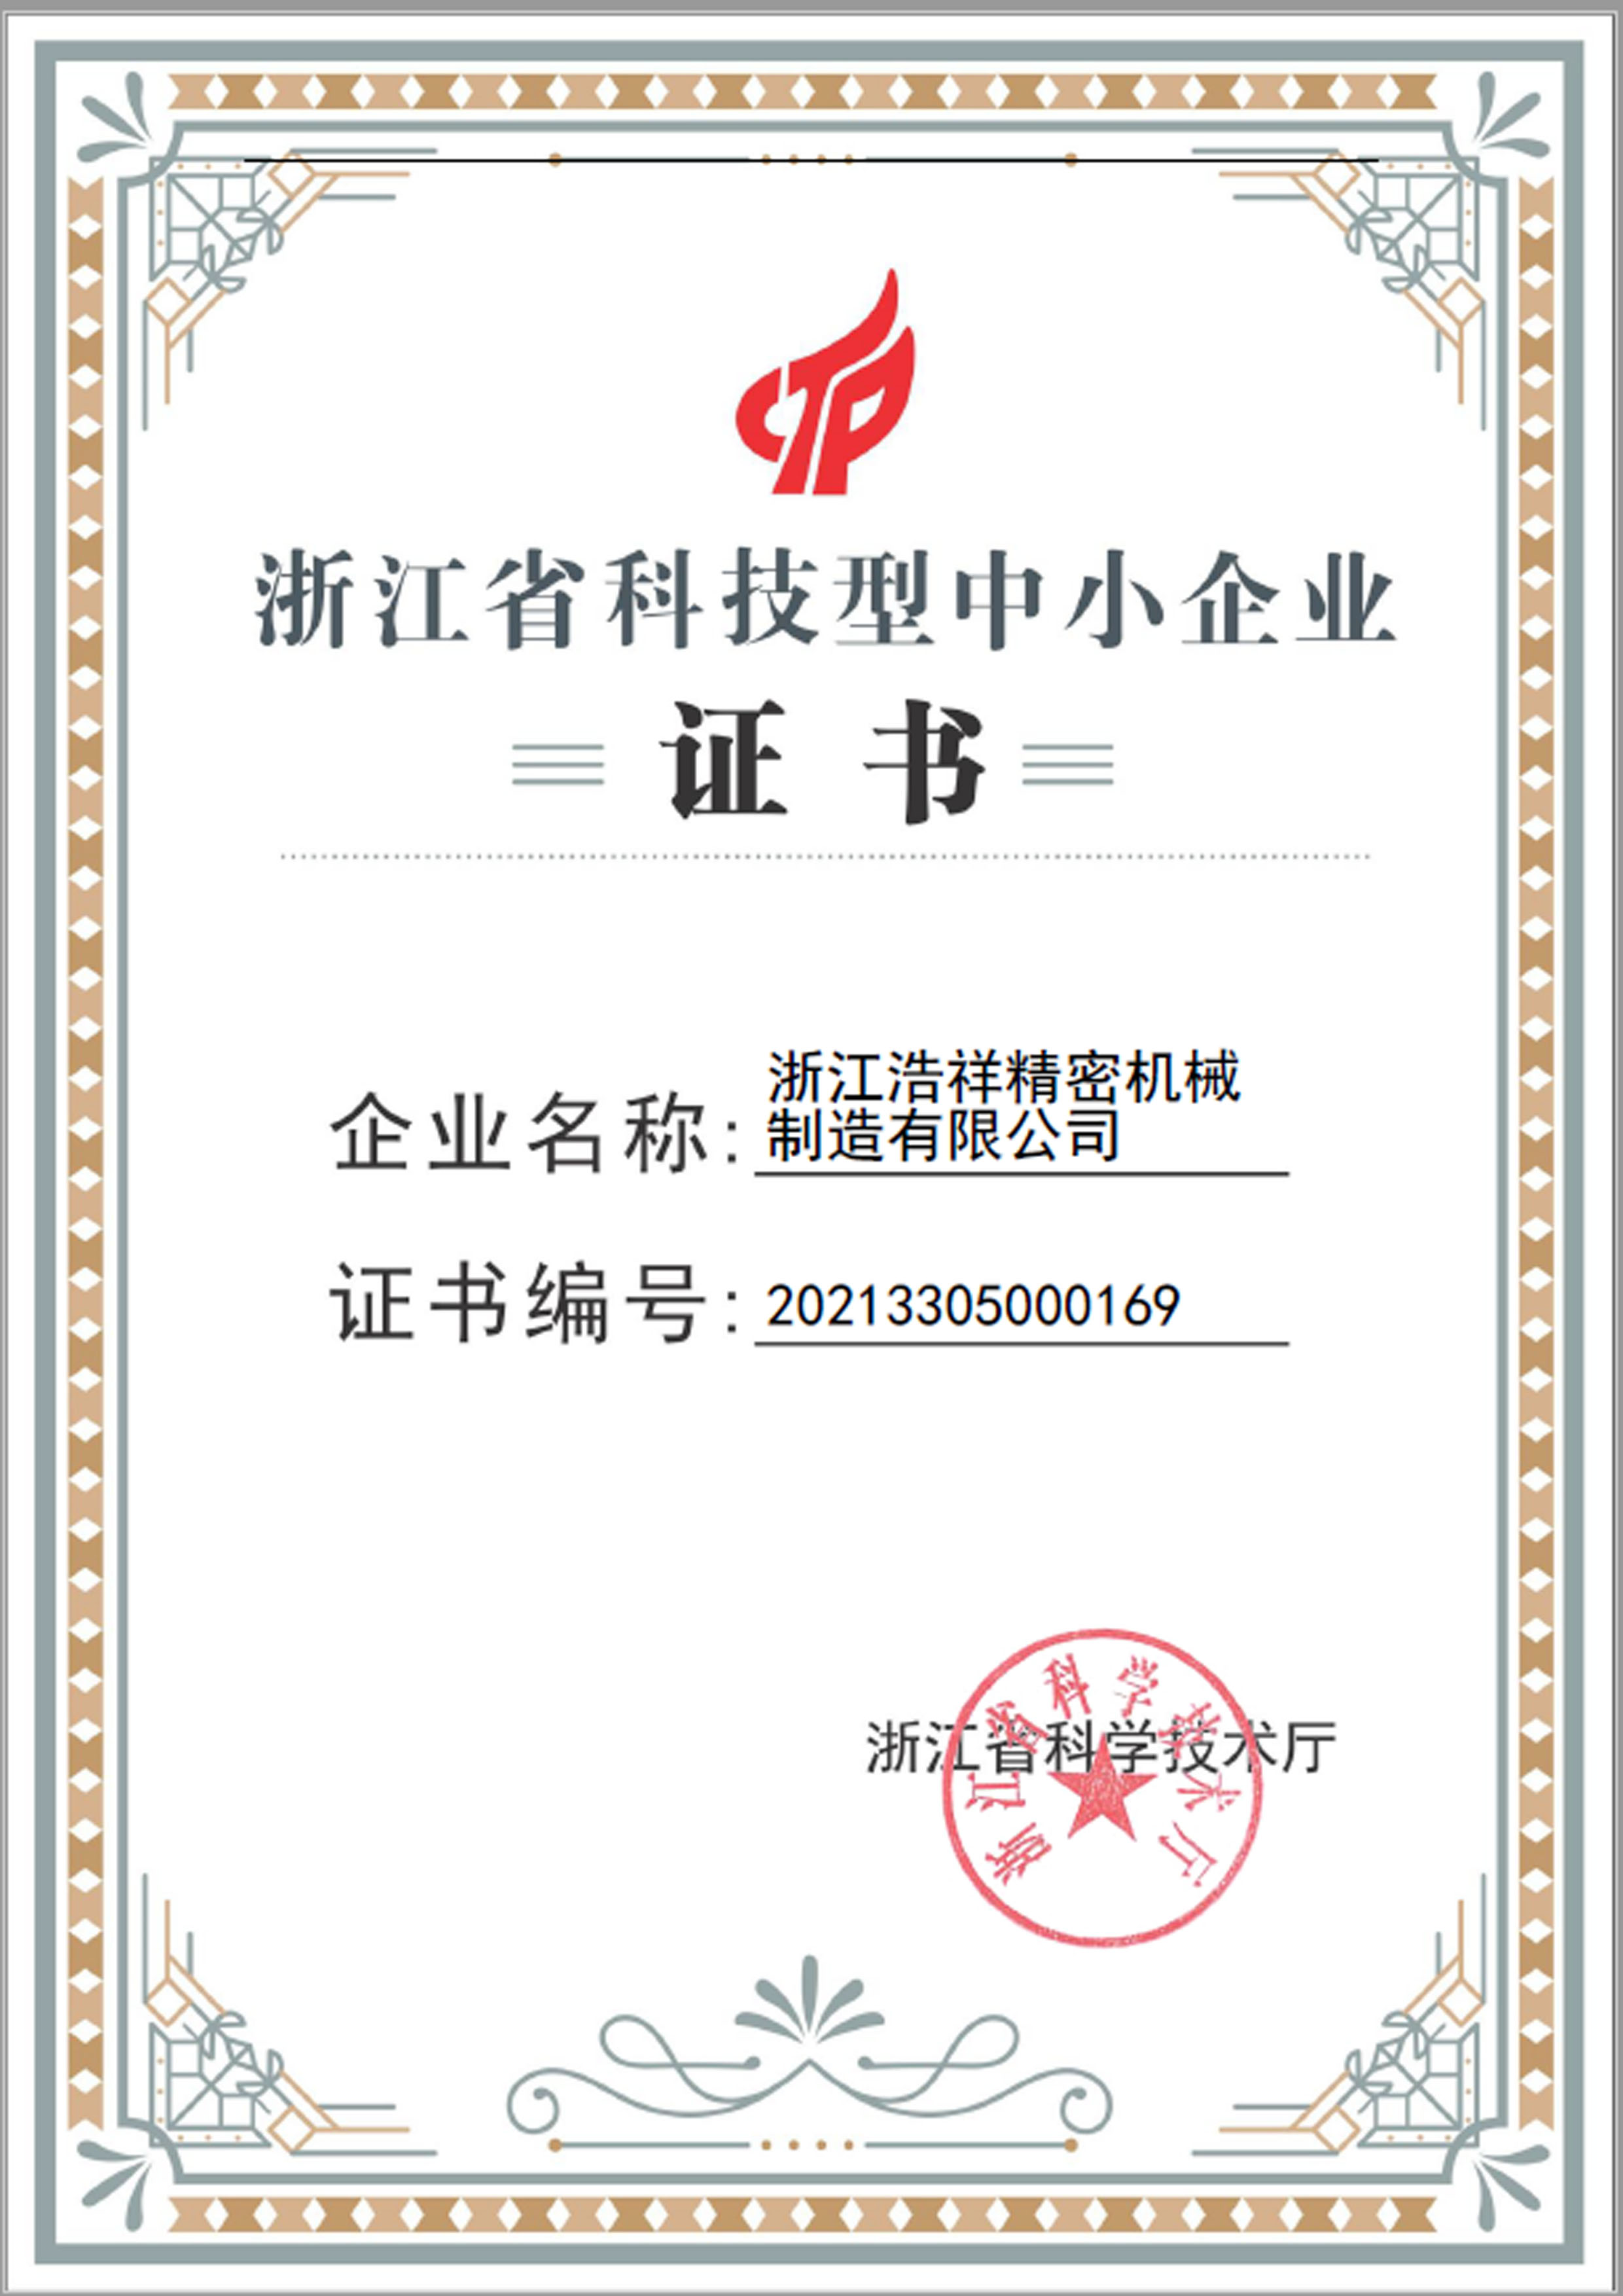 365wm完美体育荣获“浙江省科技型中小企业”荣誉称号！